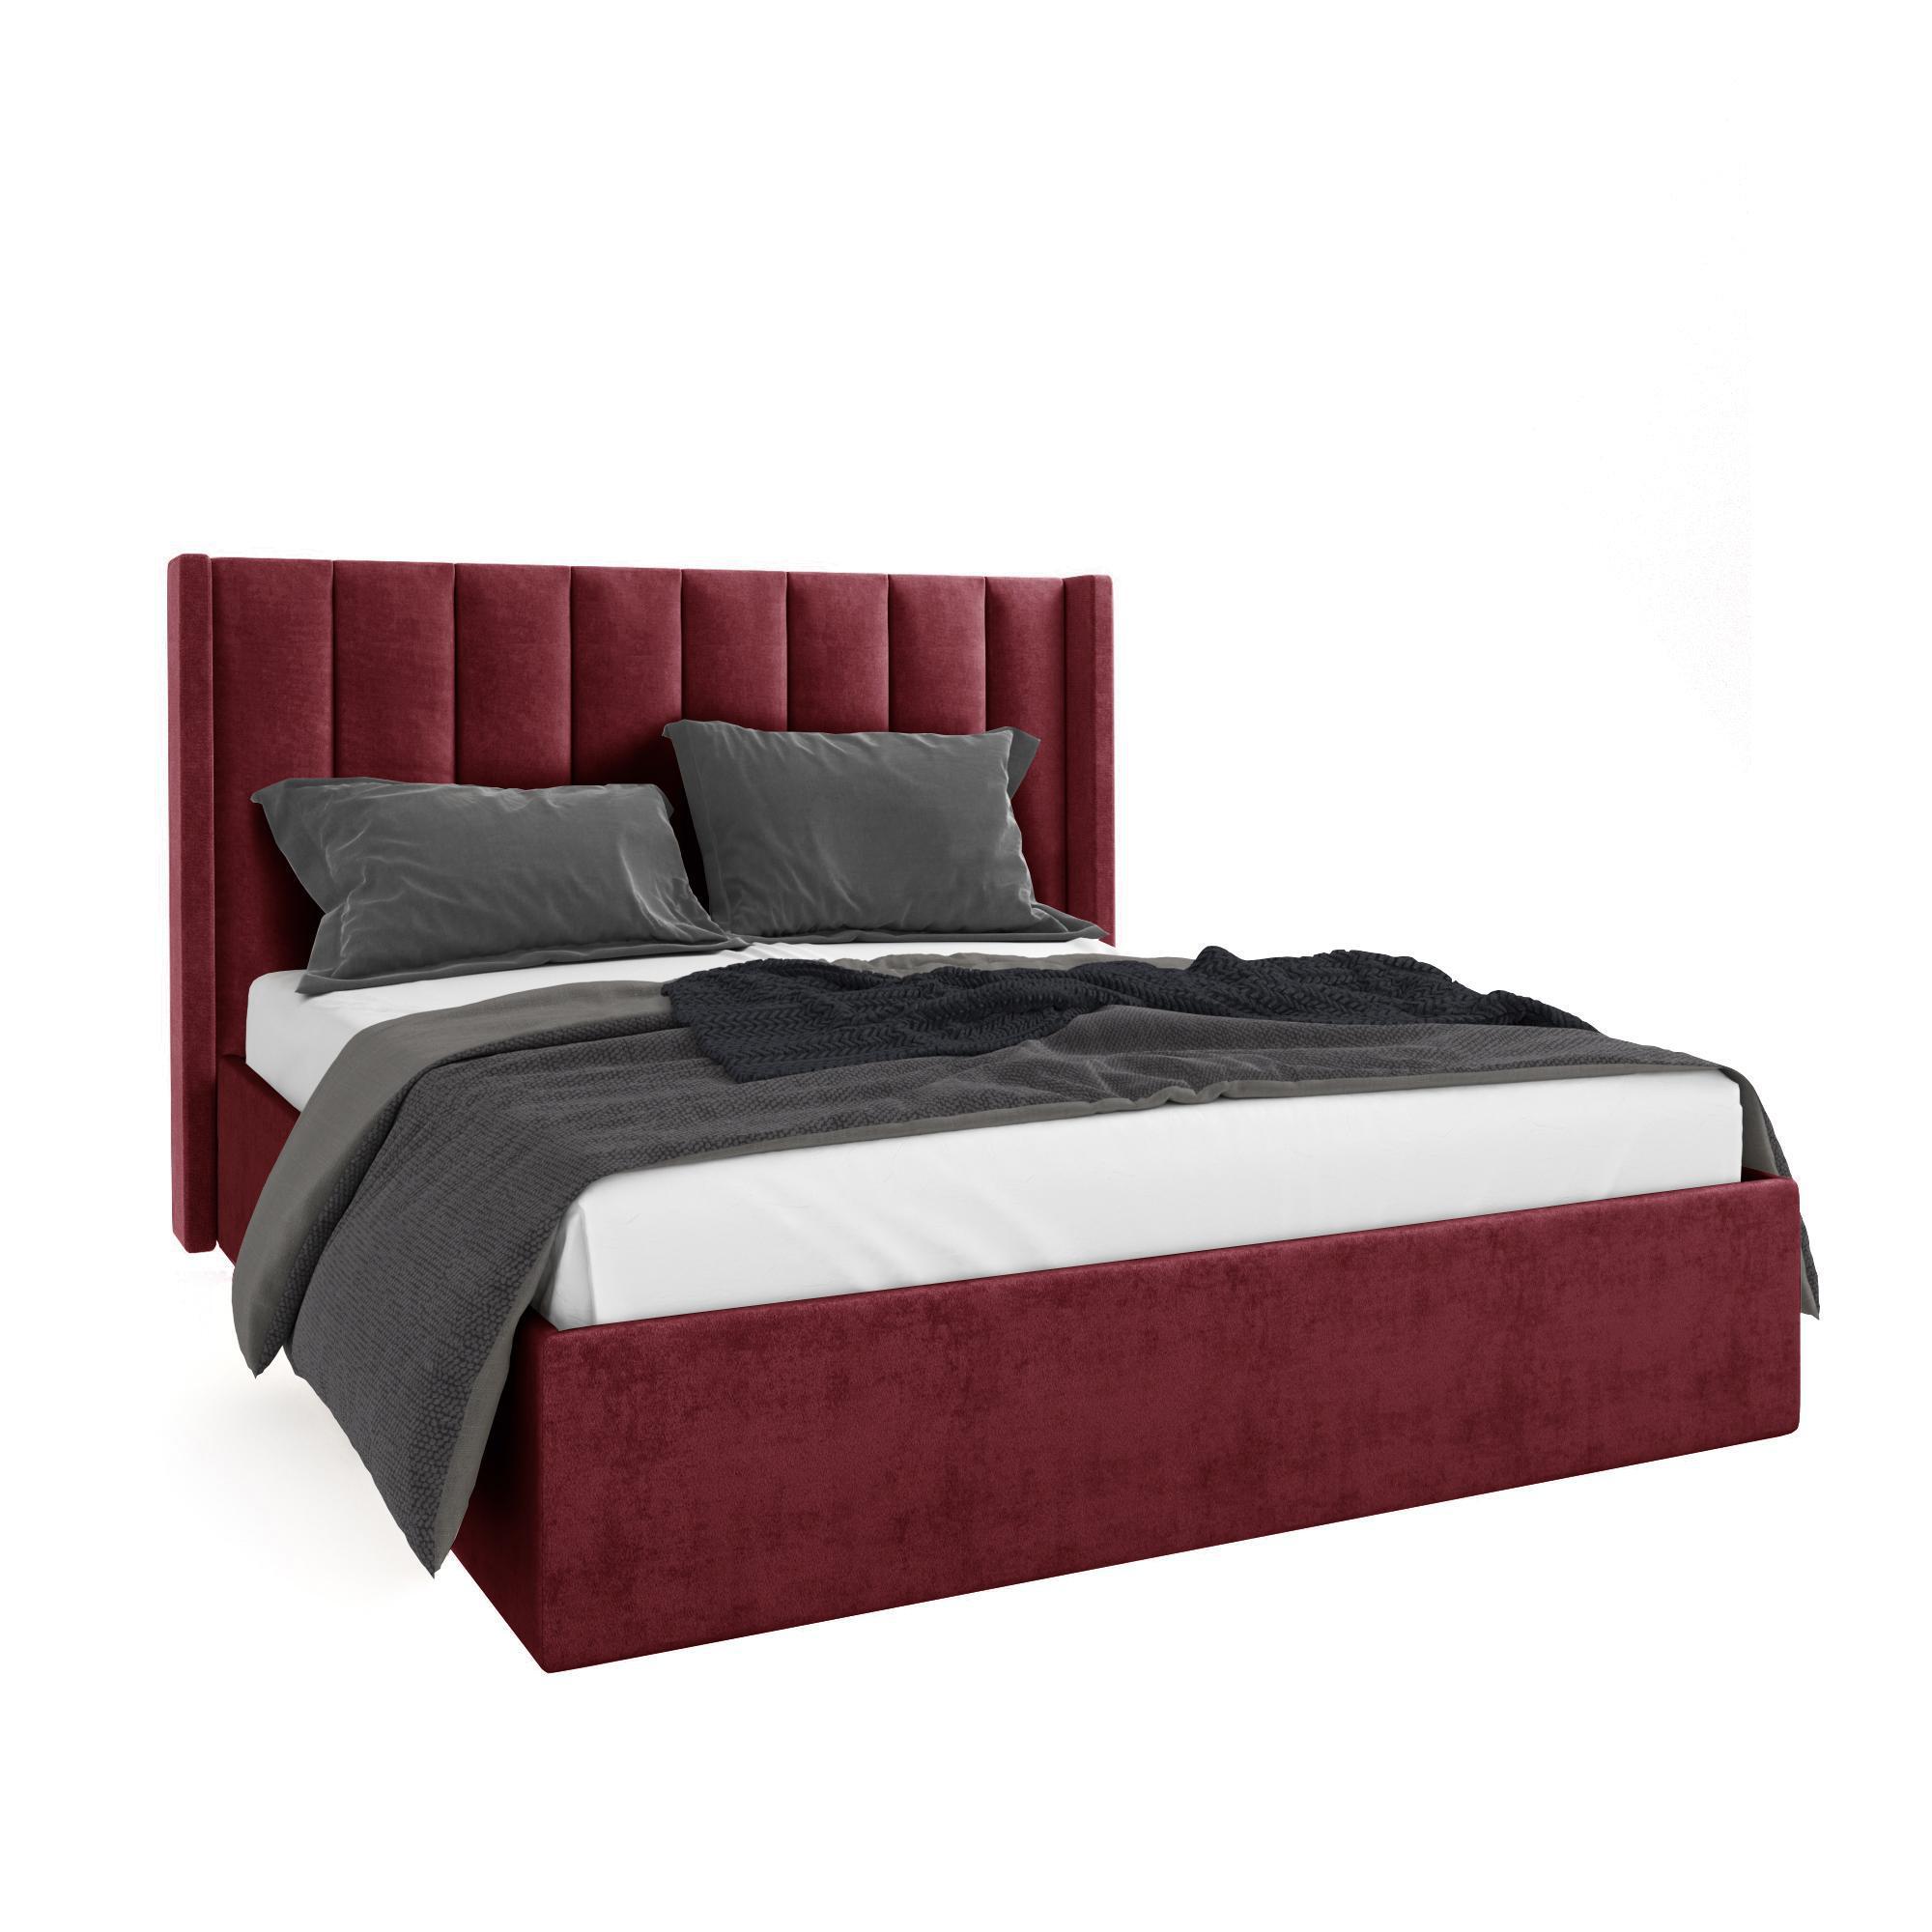 Кровать Жаклиз бордовая 180х200 изображение товара